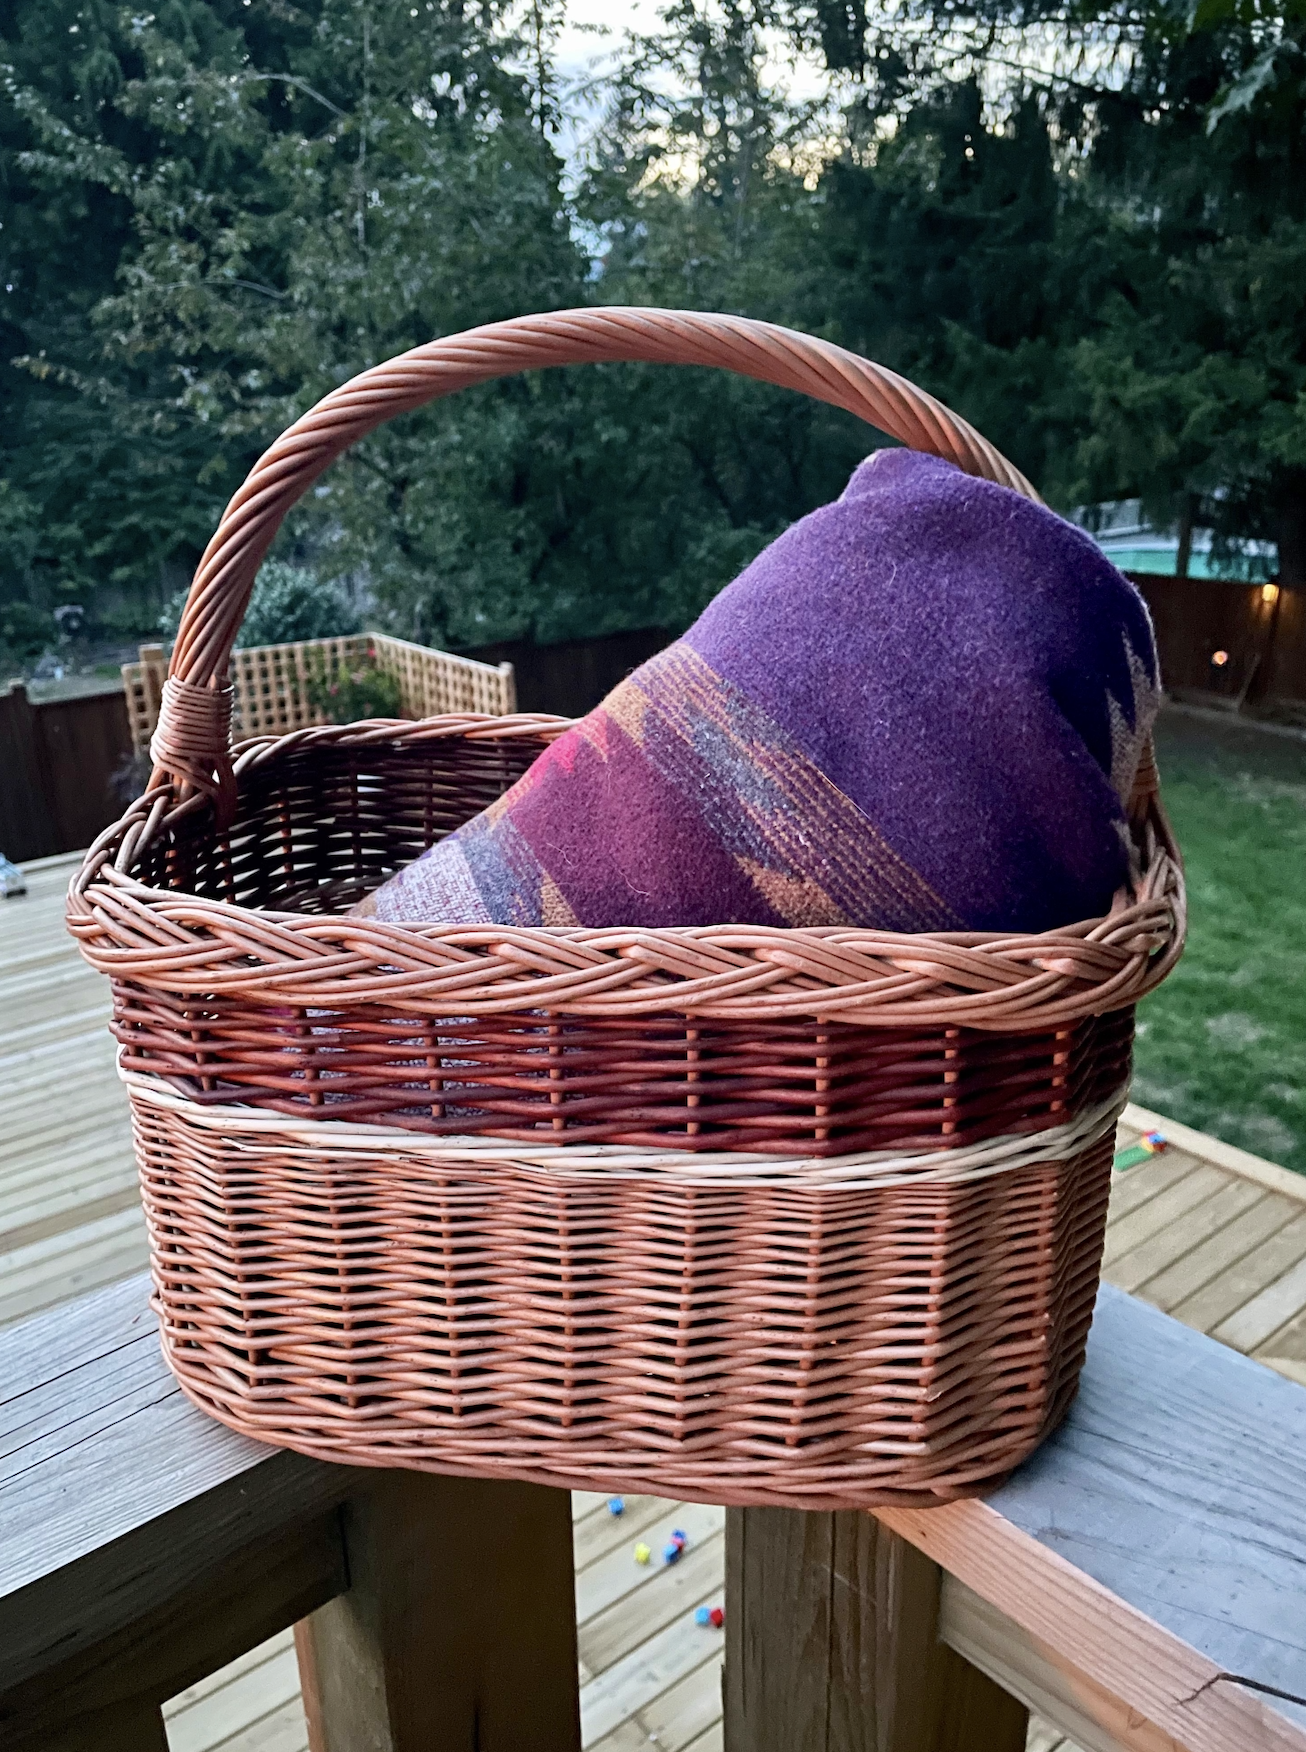 west coast alchemist handmade blankets baskets in abbotsford fraser valley british columbia canada 13